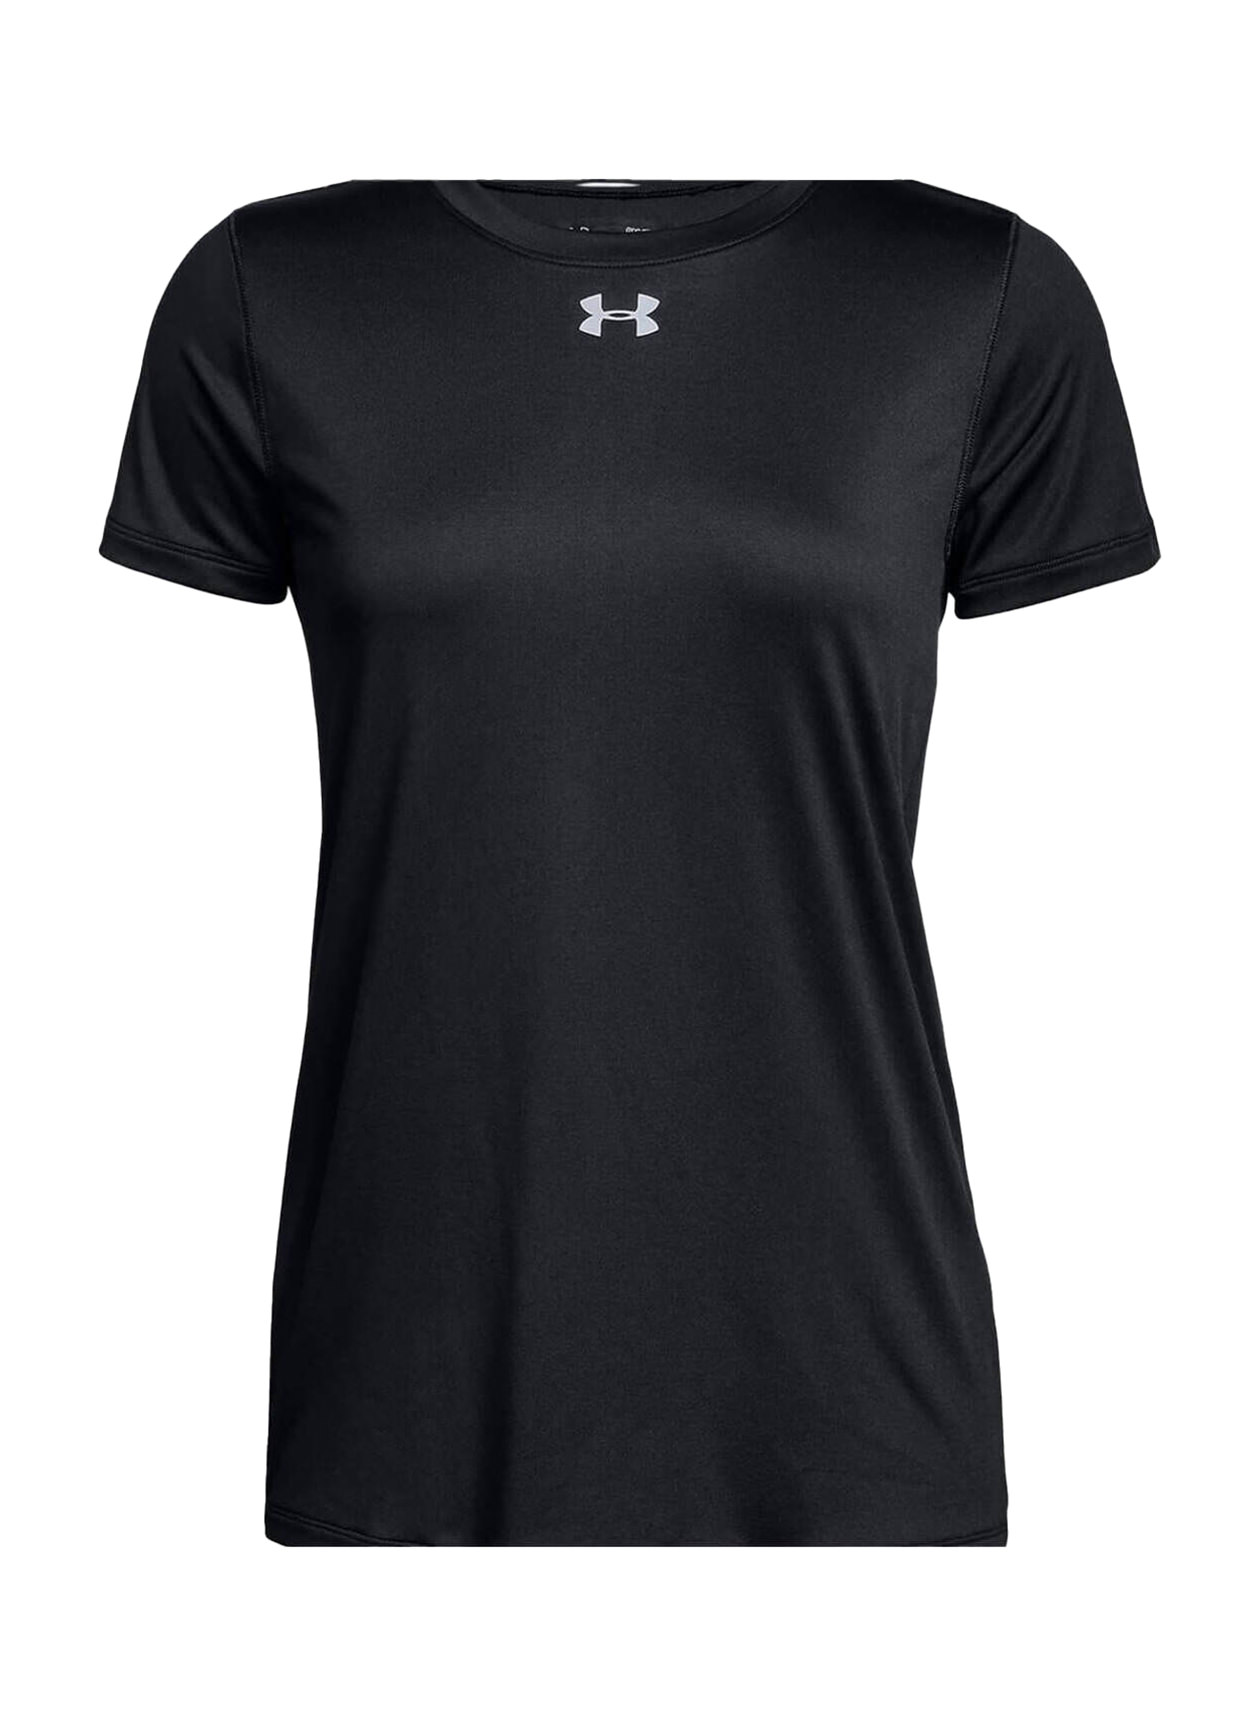 Under Armour UA Tech Short Sleeve Shirts - Women's